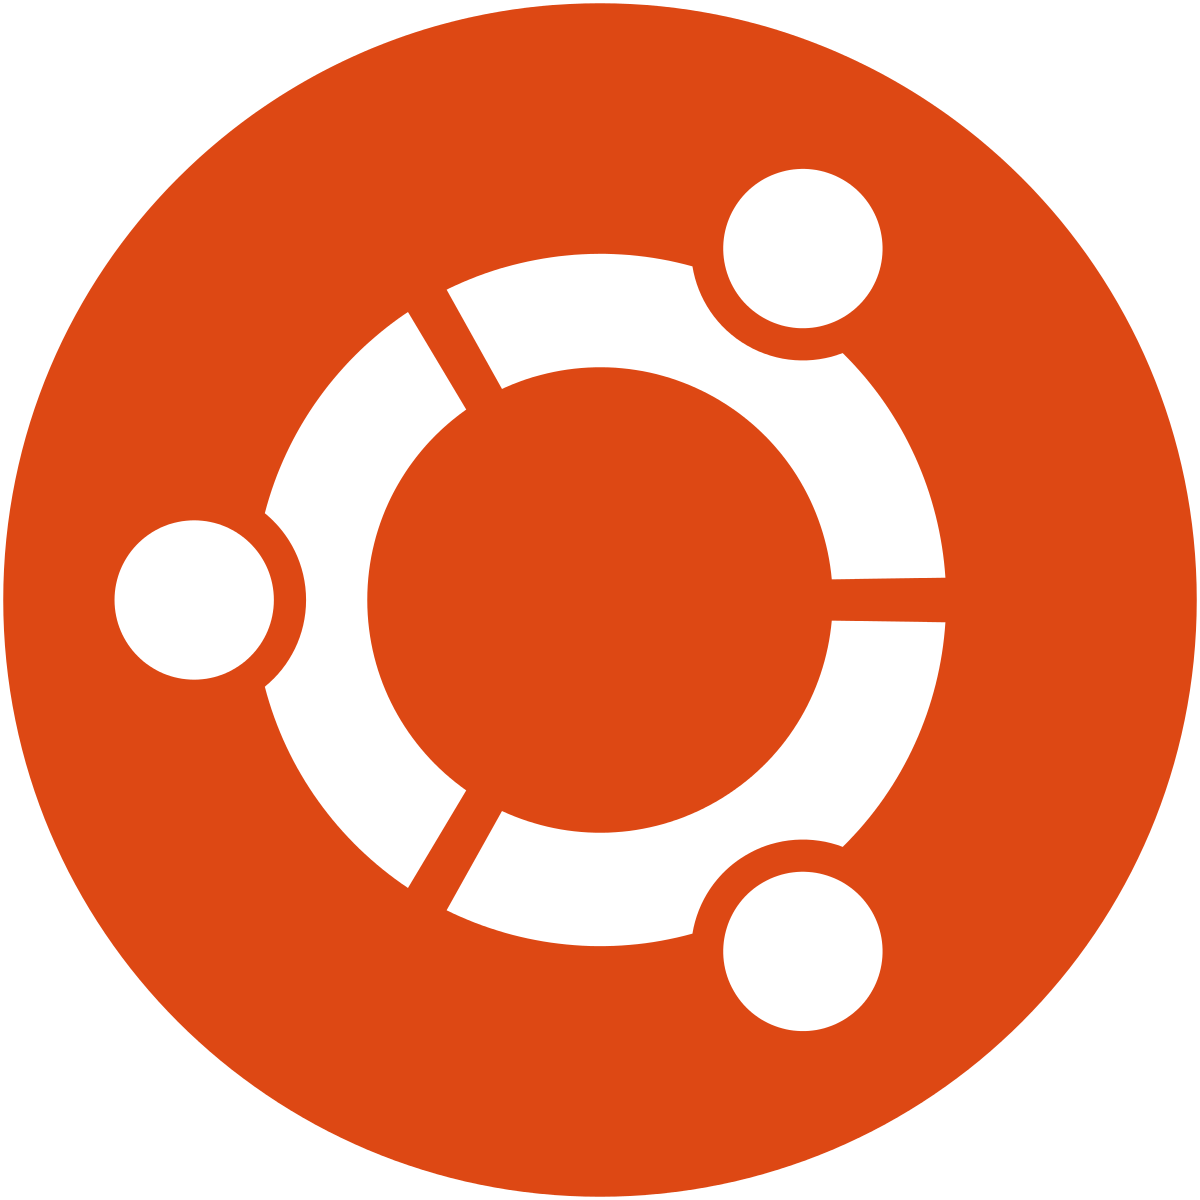 download mirror repository ubuntu